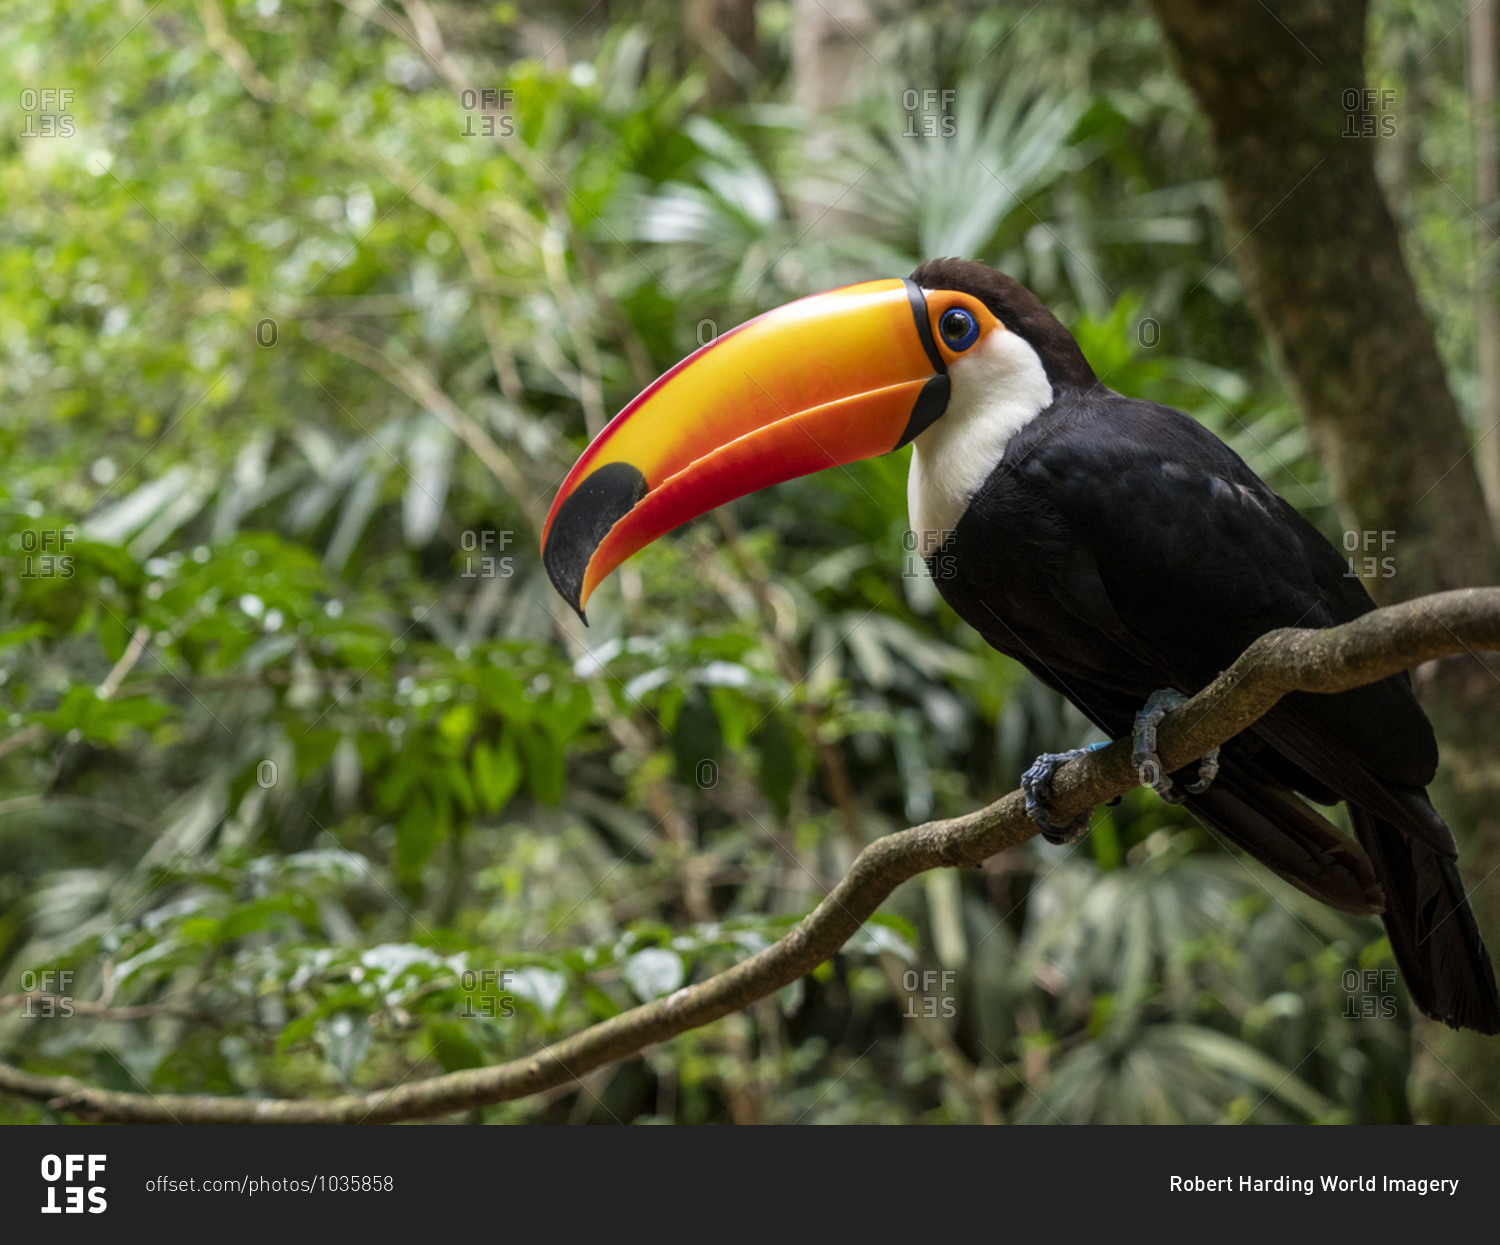 Captive toco toucan (Ramphastos toco), Parque das Aves, Foz do Iguacu, Parana State, Brazil, South America